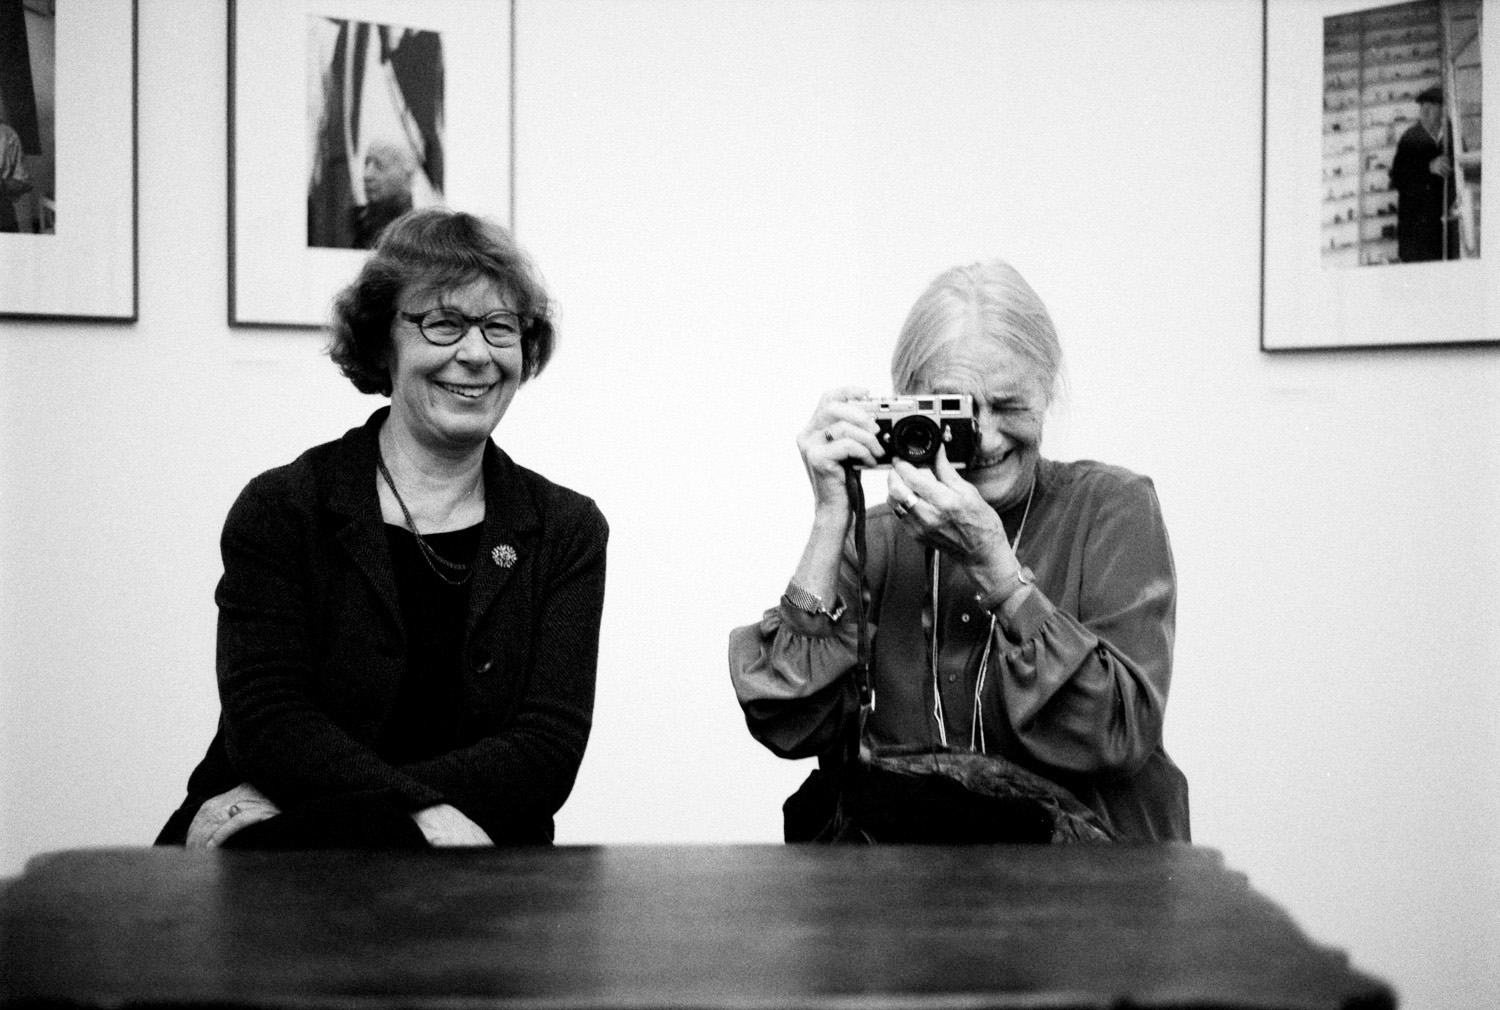   Rein in die Dunkelkammer! | Gemeinsam im Gespräch: Die Fotografinnen Barbara Klemm und Evelyn Richter  